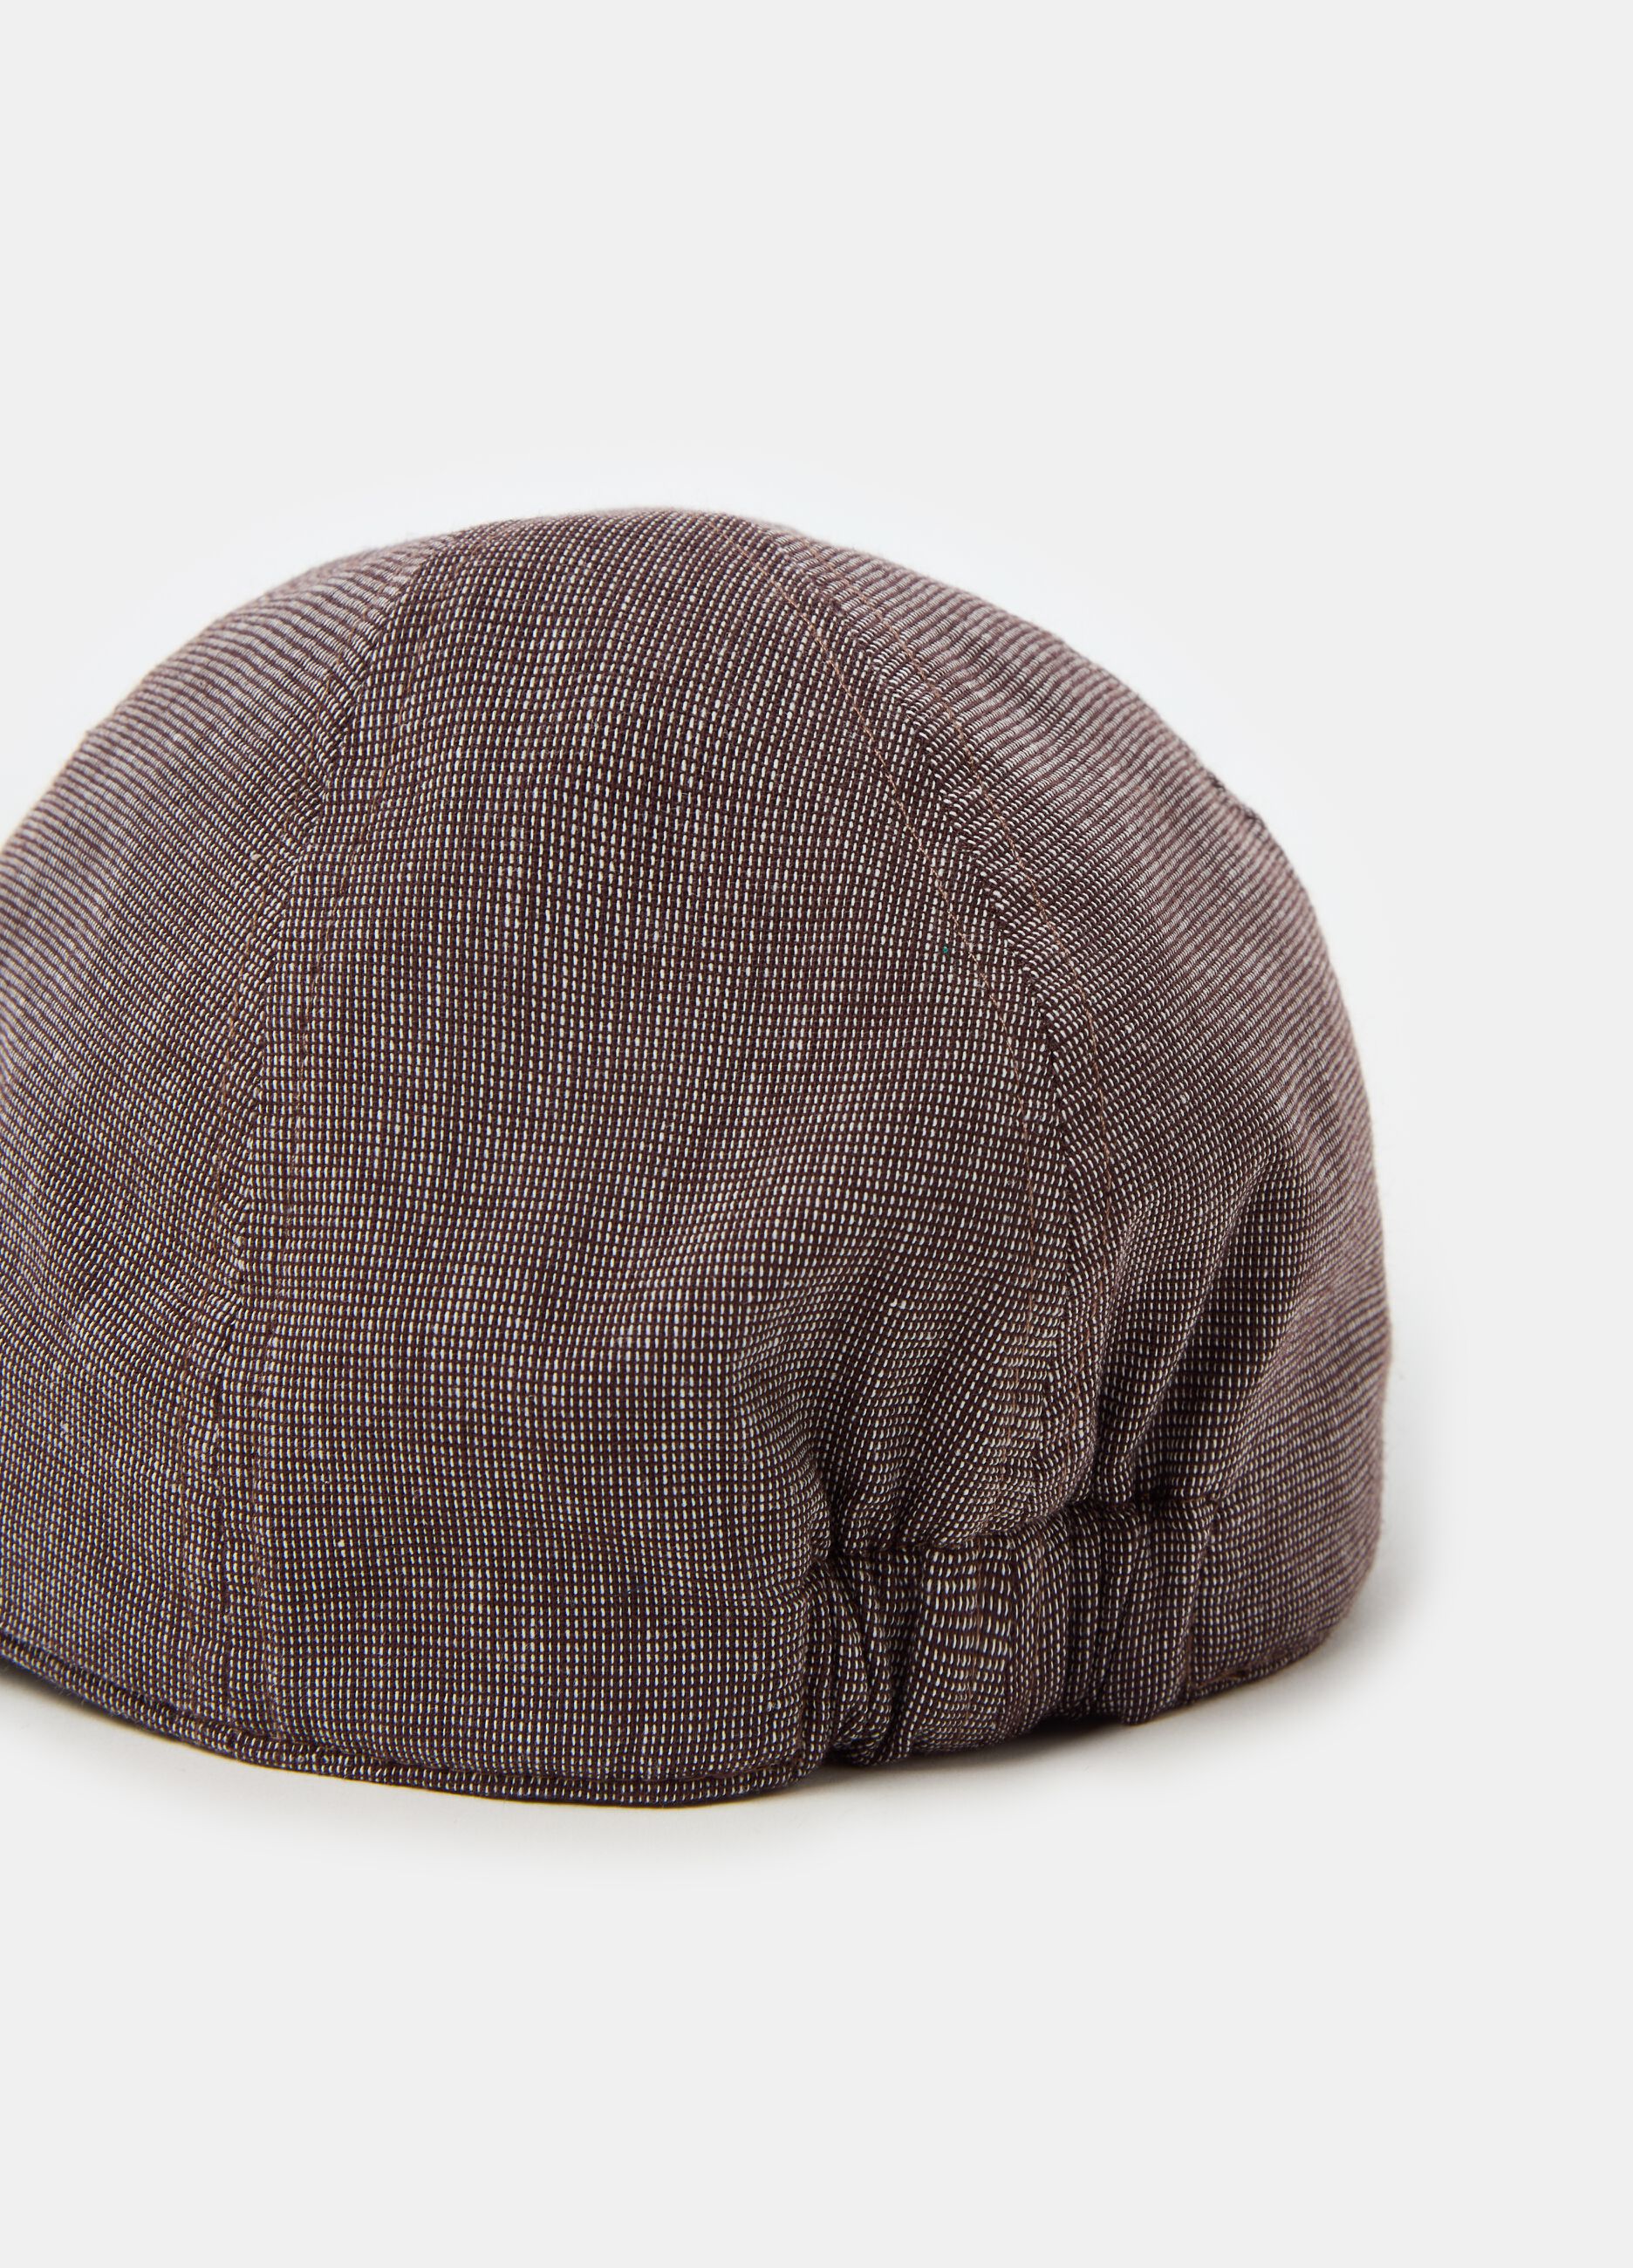 Flat cap in textured fabric